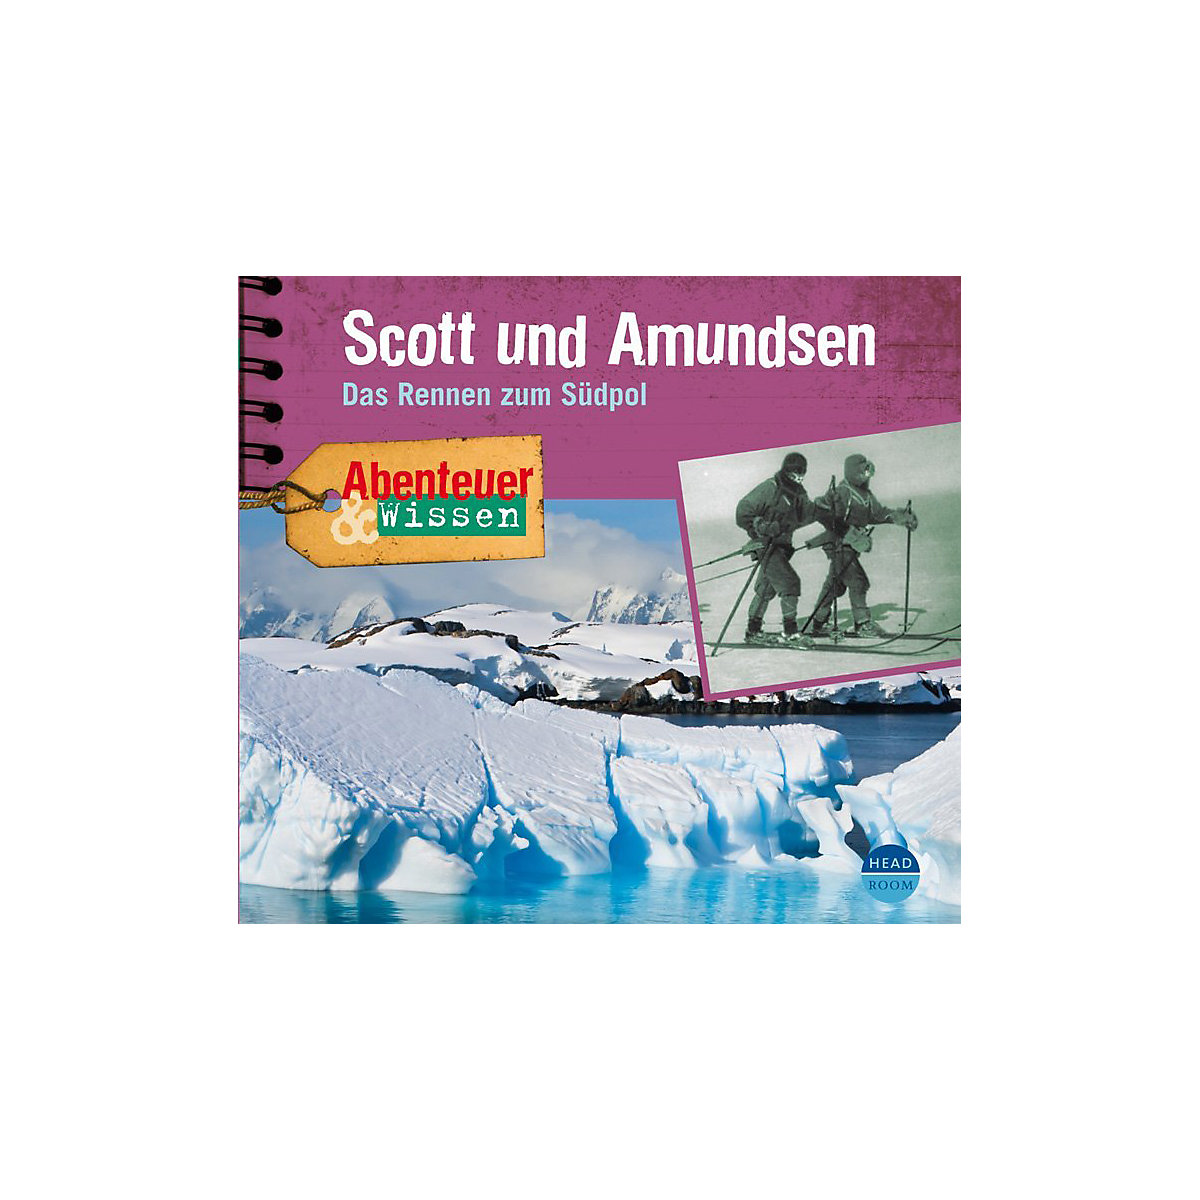 Scott und Amundsen 1 Audio-CD